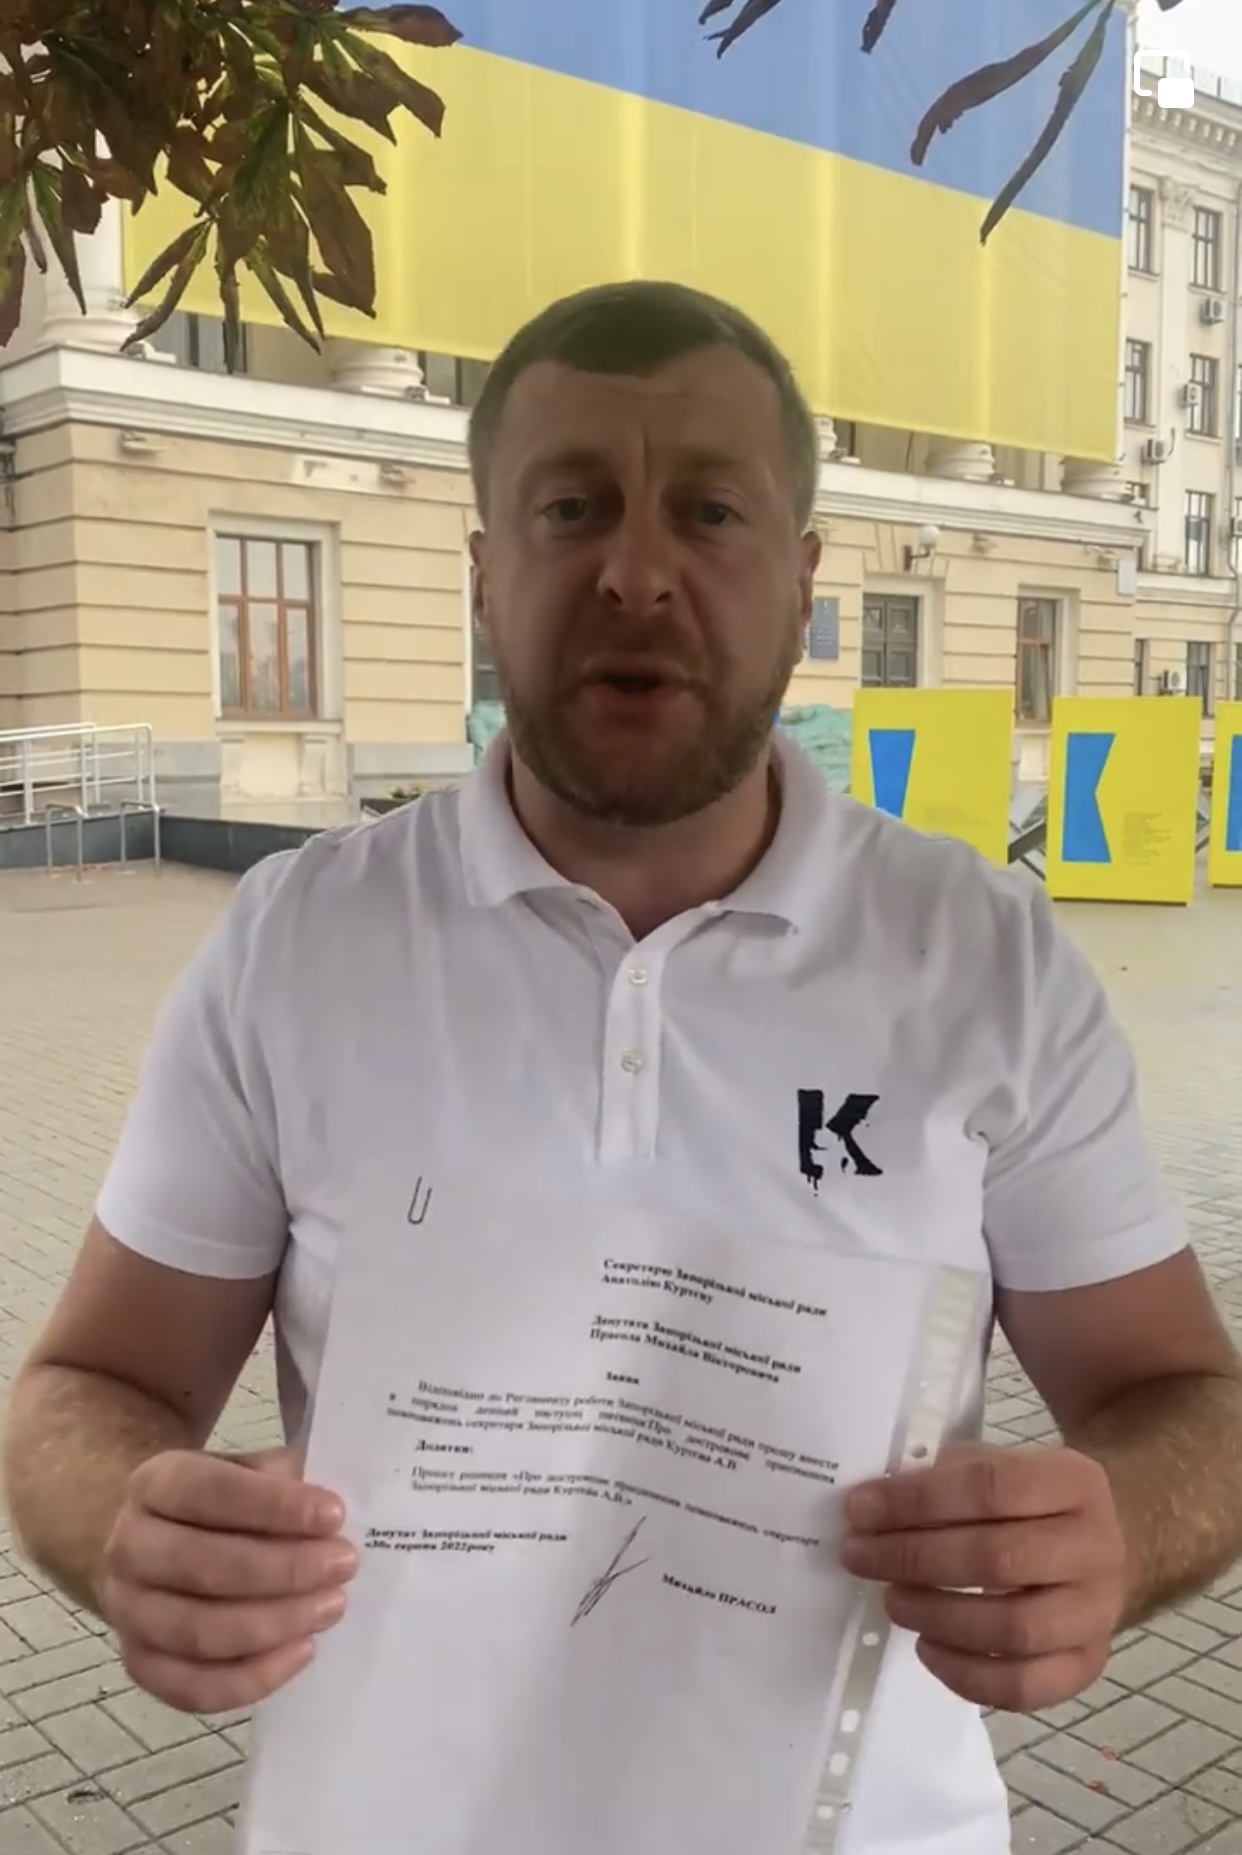 Депутат Запорожского горсовета подал решение об увольнении Анатолия Куртева с должности секретаря